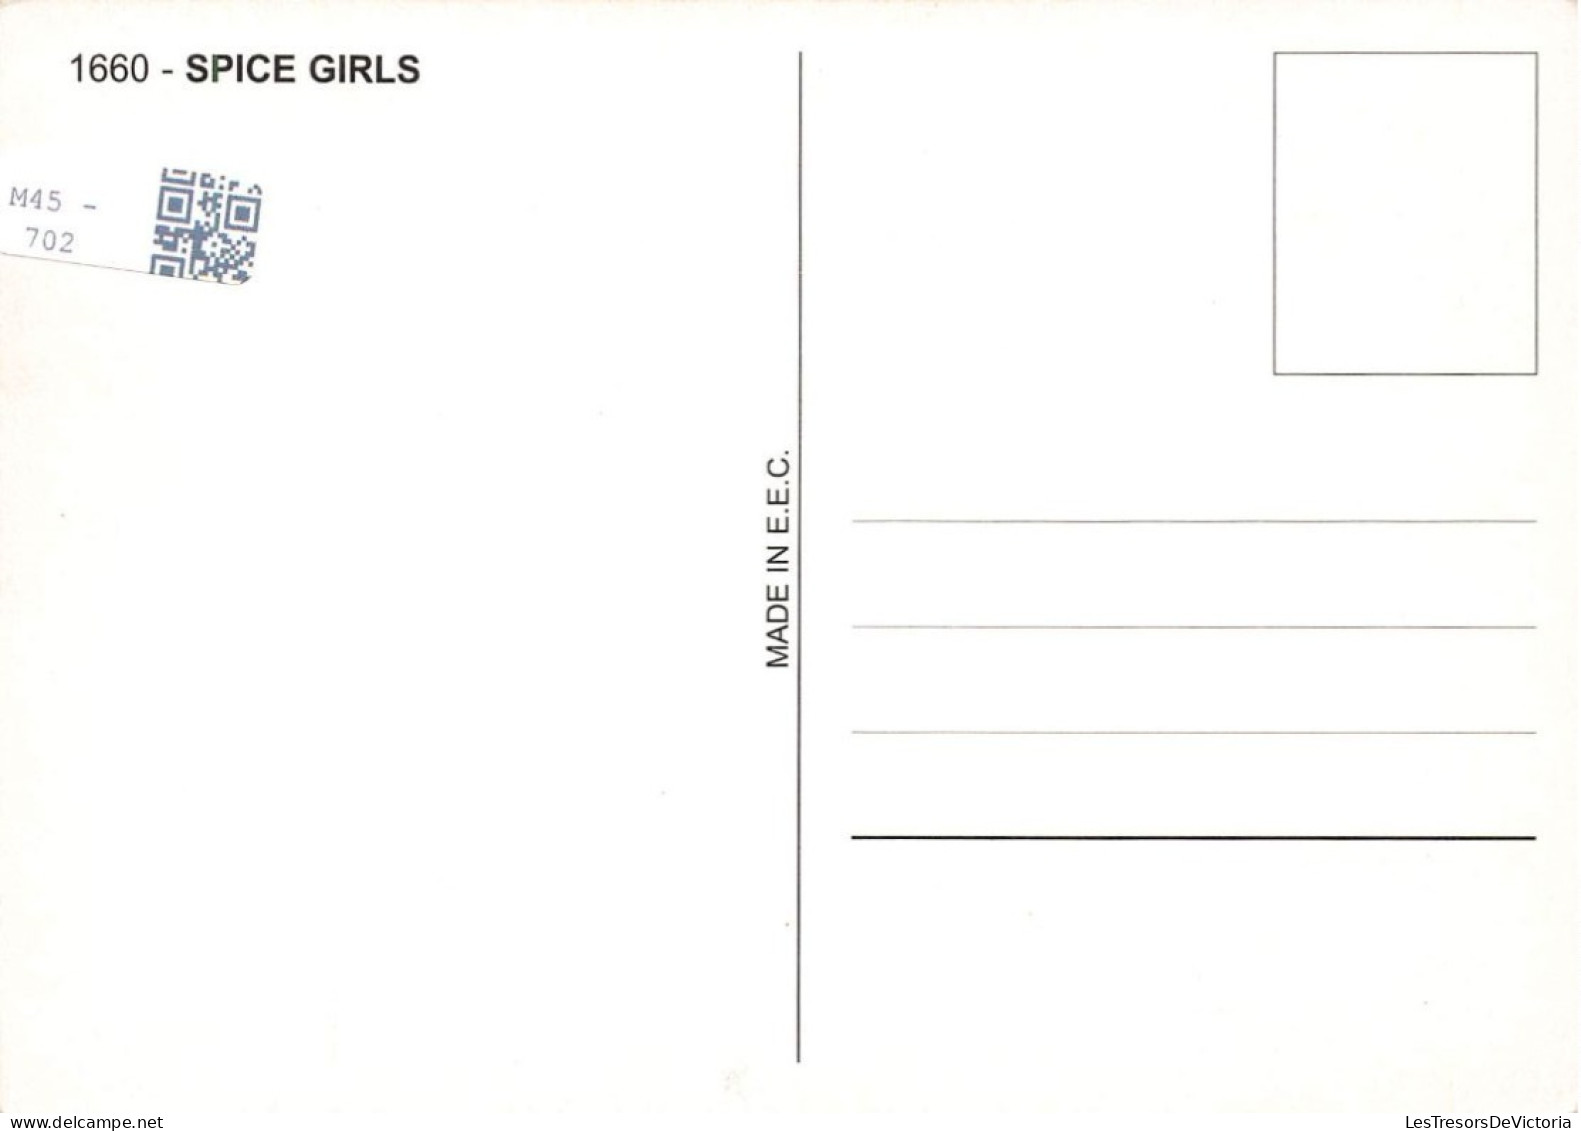 CELEBRITES - Spice Girls - Colorisé - Carte Postale - Cantanti E Musicisti